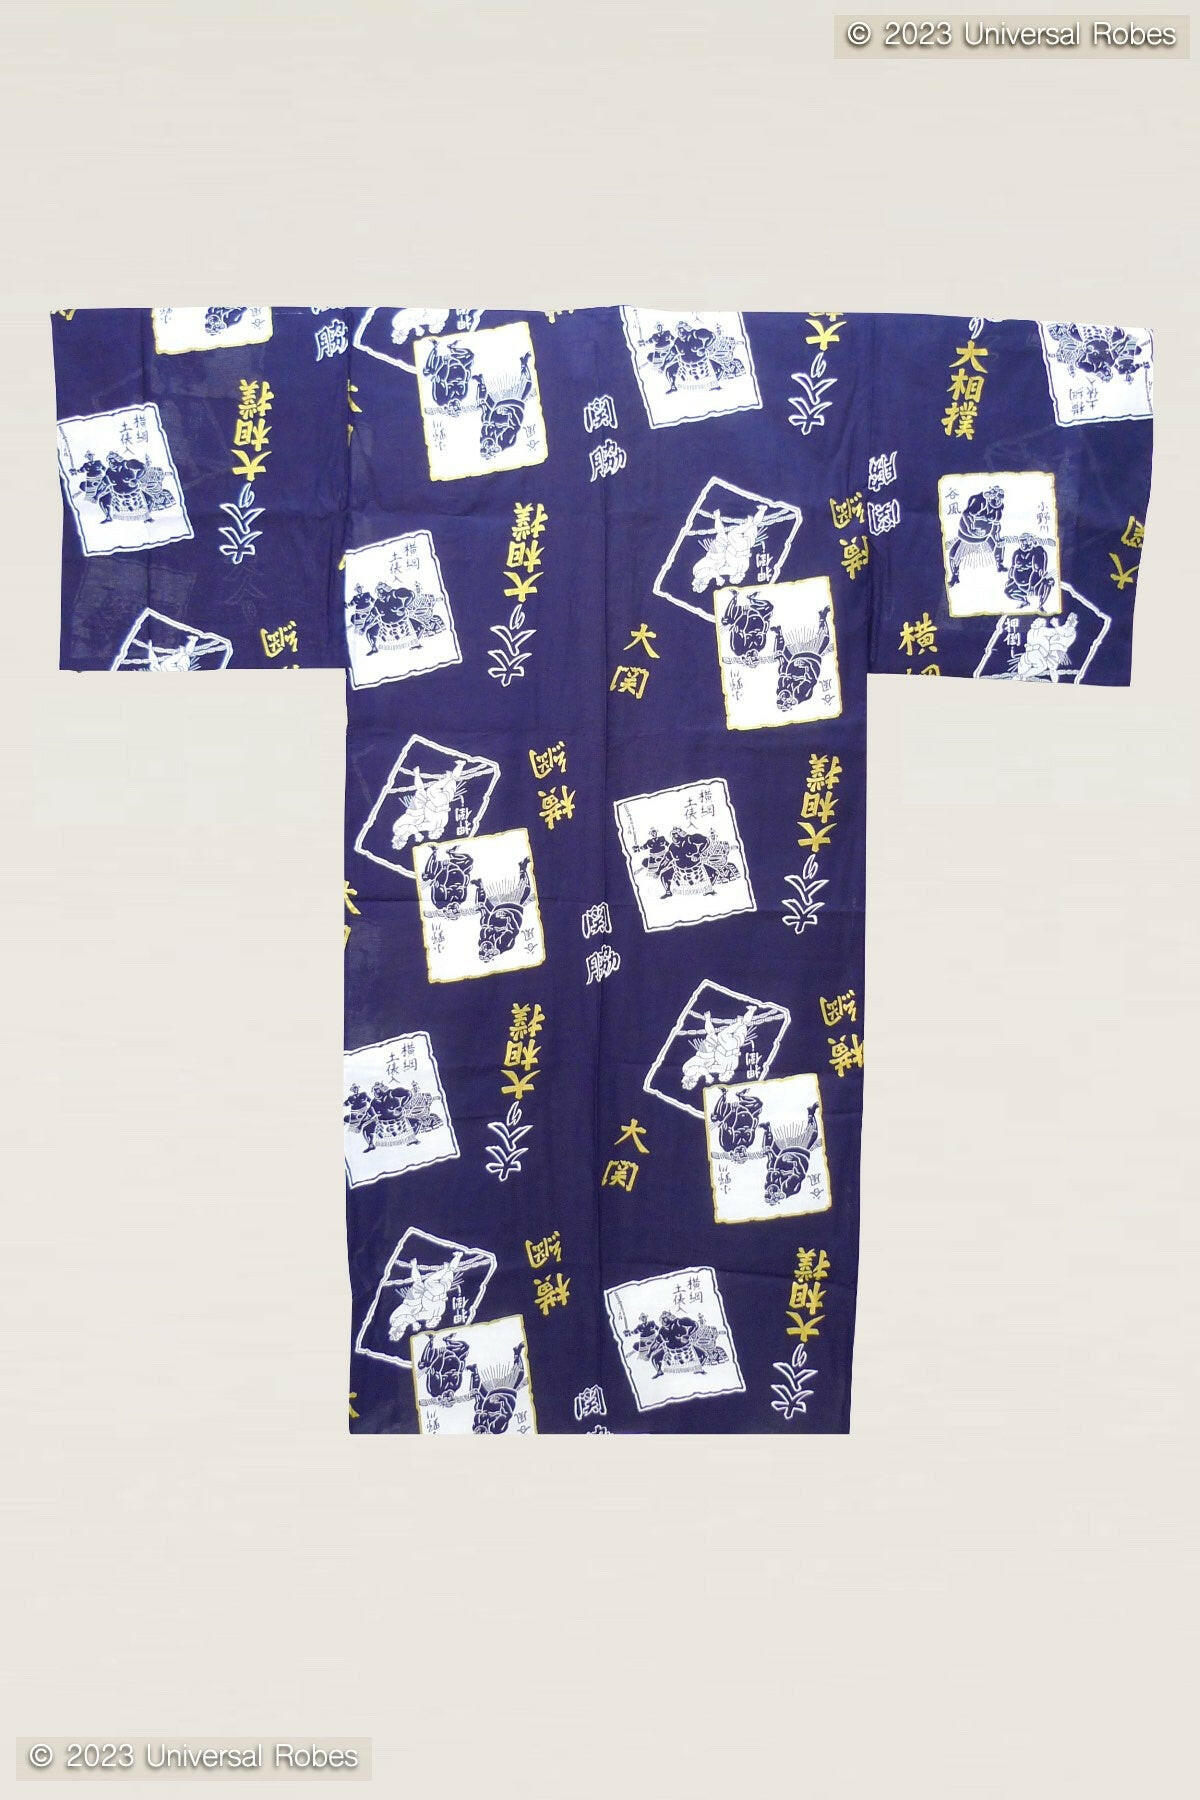 Men SUMO Wrestler Cotton Yukata Kimono Color Navy Product Whole View